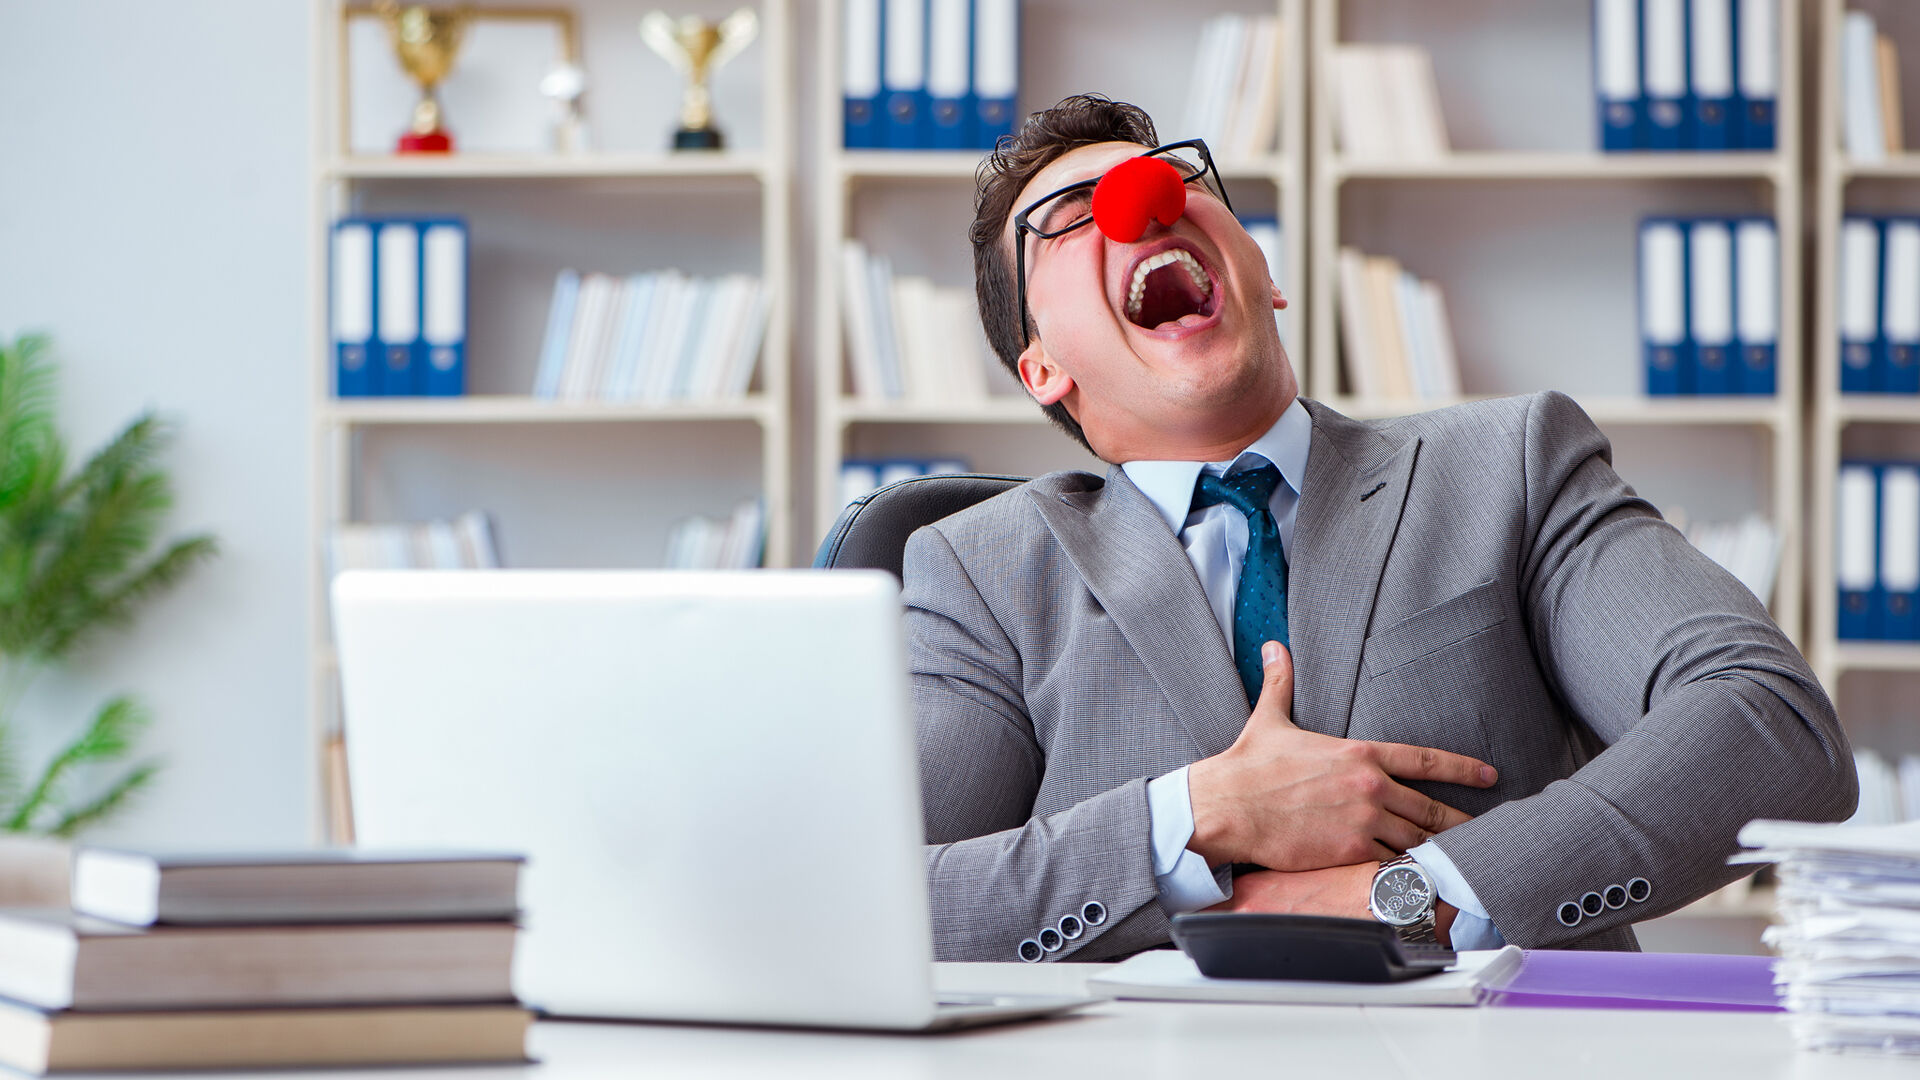 Mann med rød nese sittende bak en PC ler